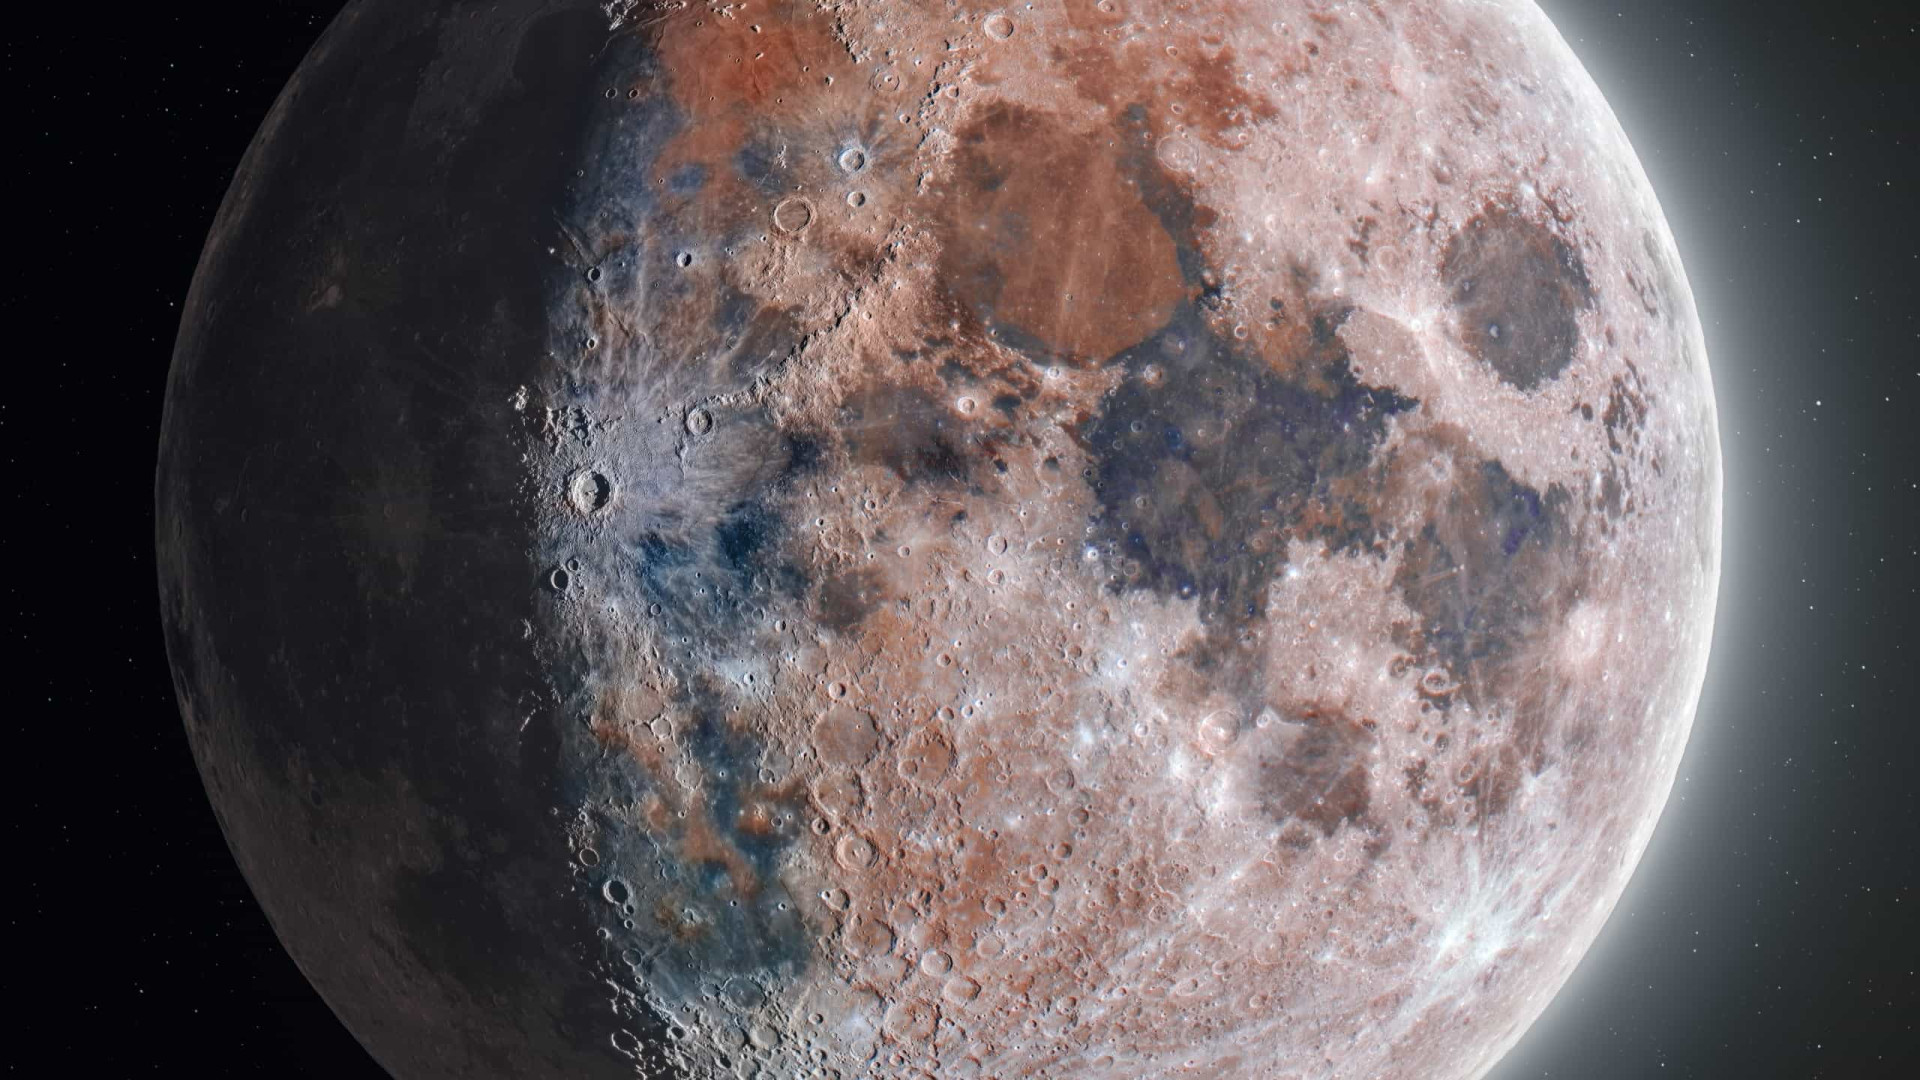 Formação da Lua ocorreu em algumas horas, sugere nova simulação da Nasa